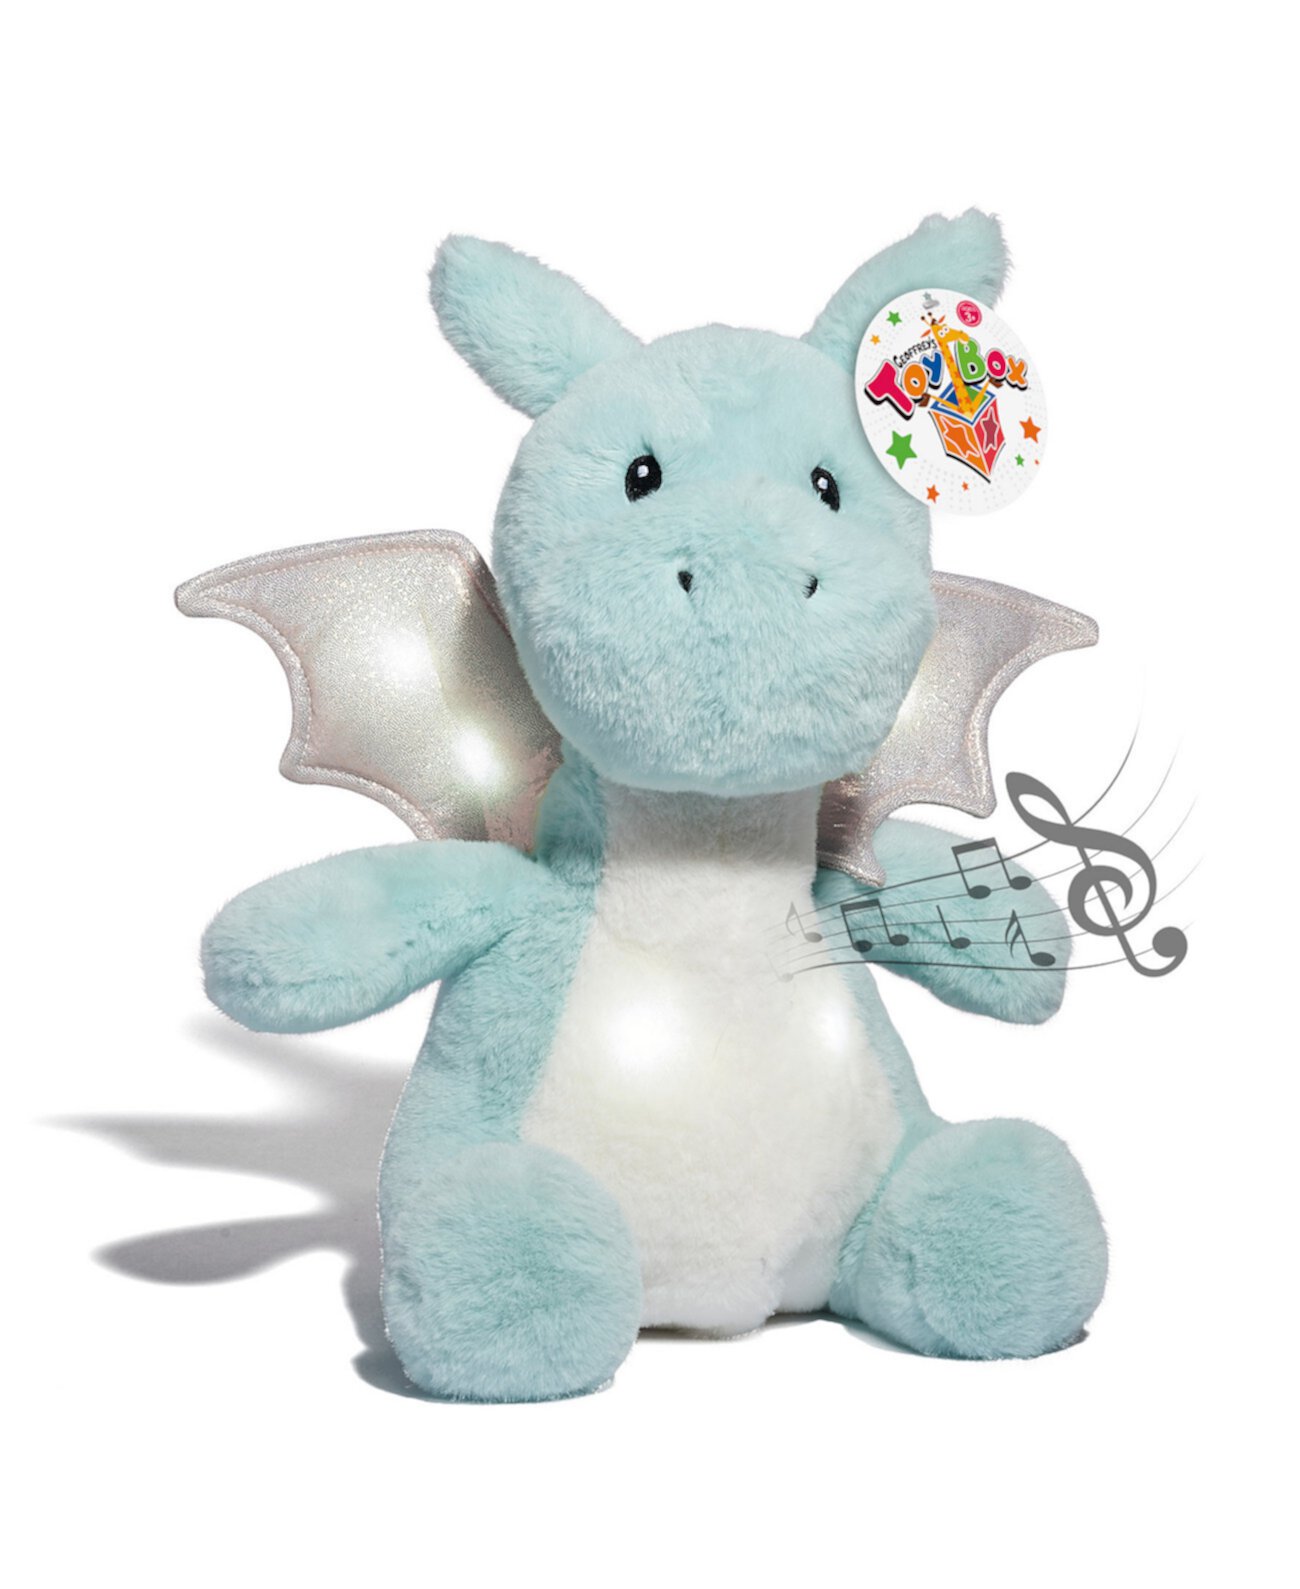 Плюшевая игрушка дракона со светодиодной подсветкой, созданная для Macy's Geoffrey's Toy Box